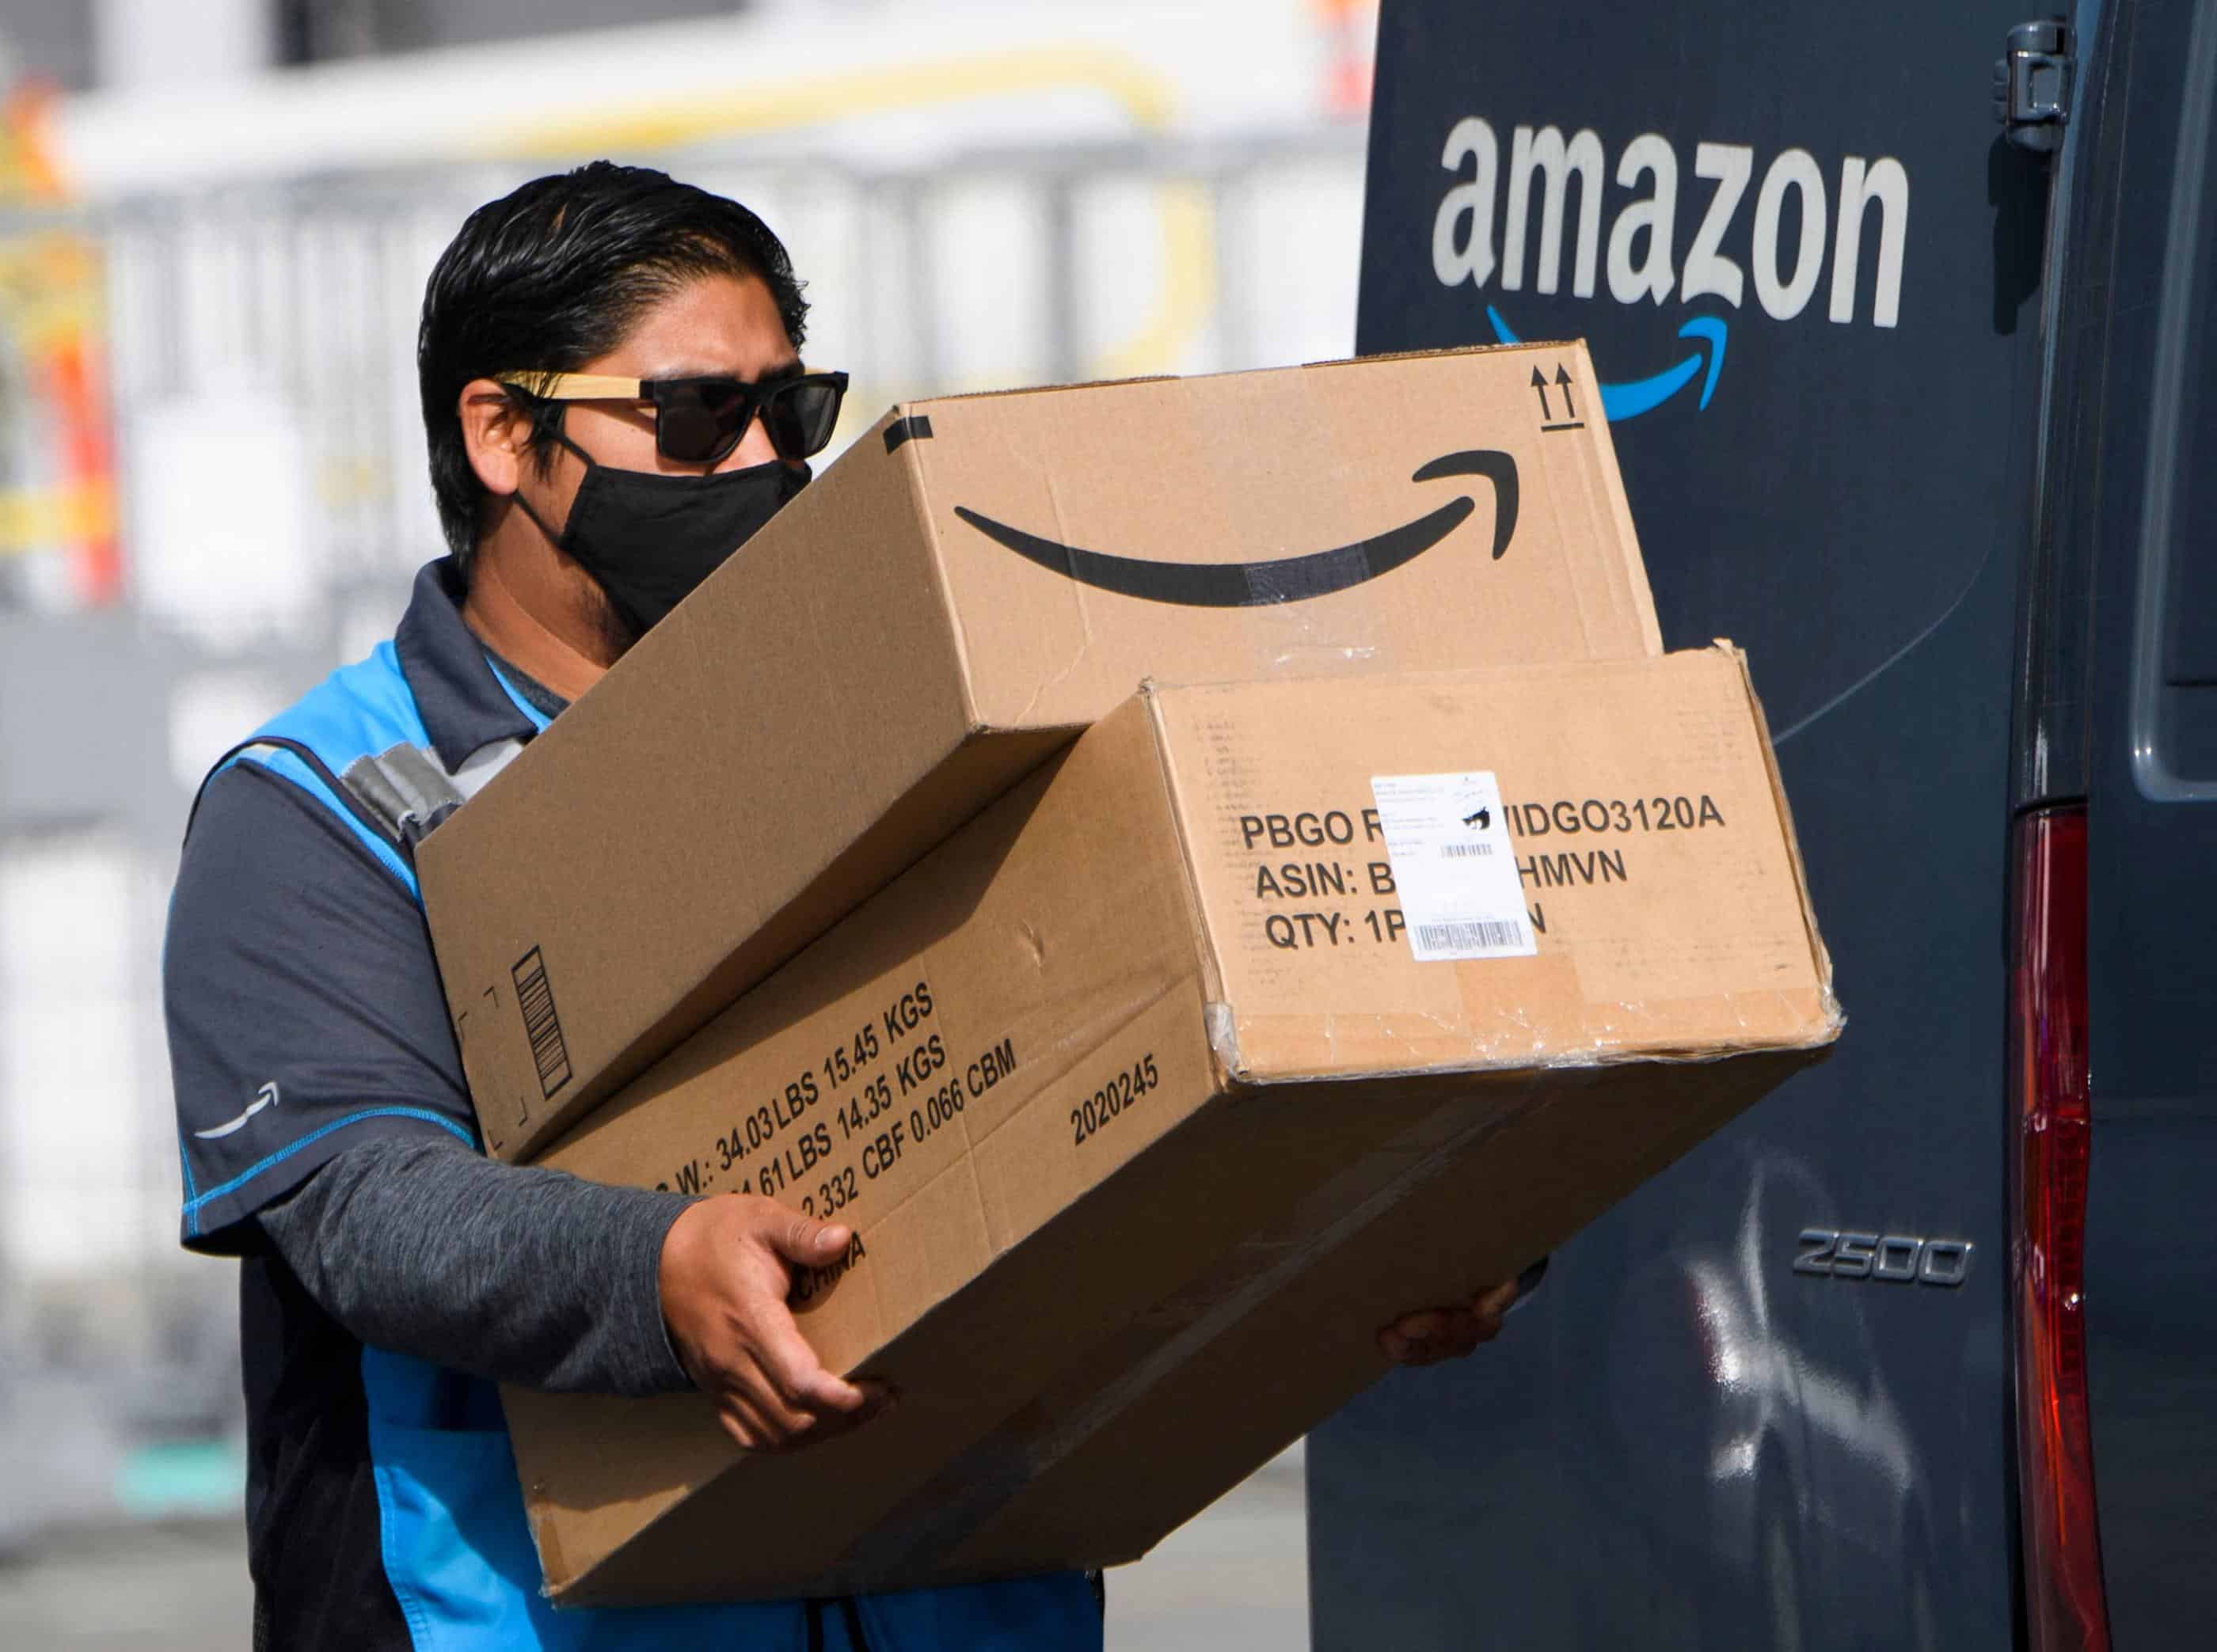 Vendeurs : Financièrement sanctionnés pour ne pas utiliser les services d’Amazon